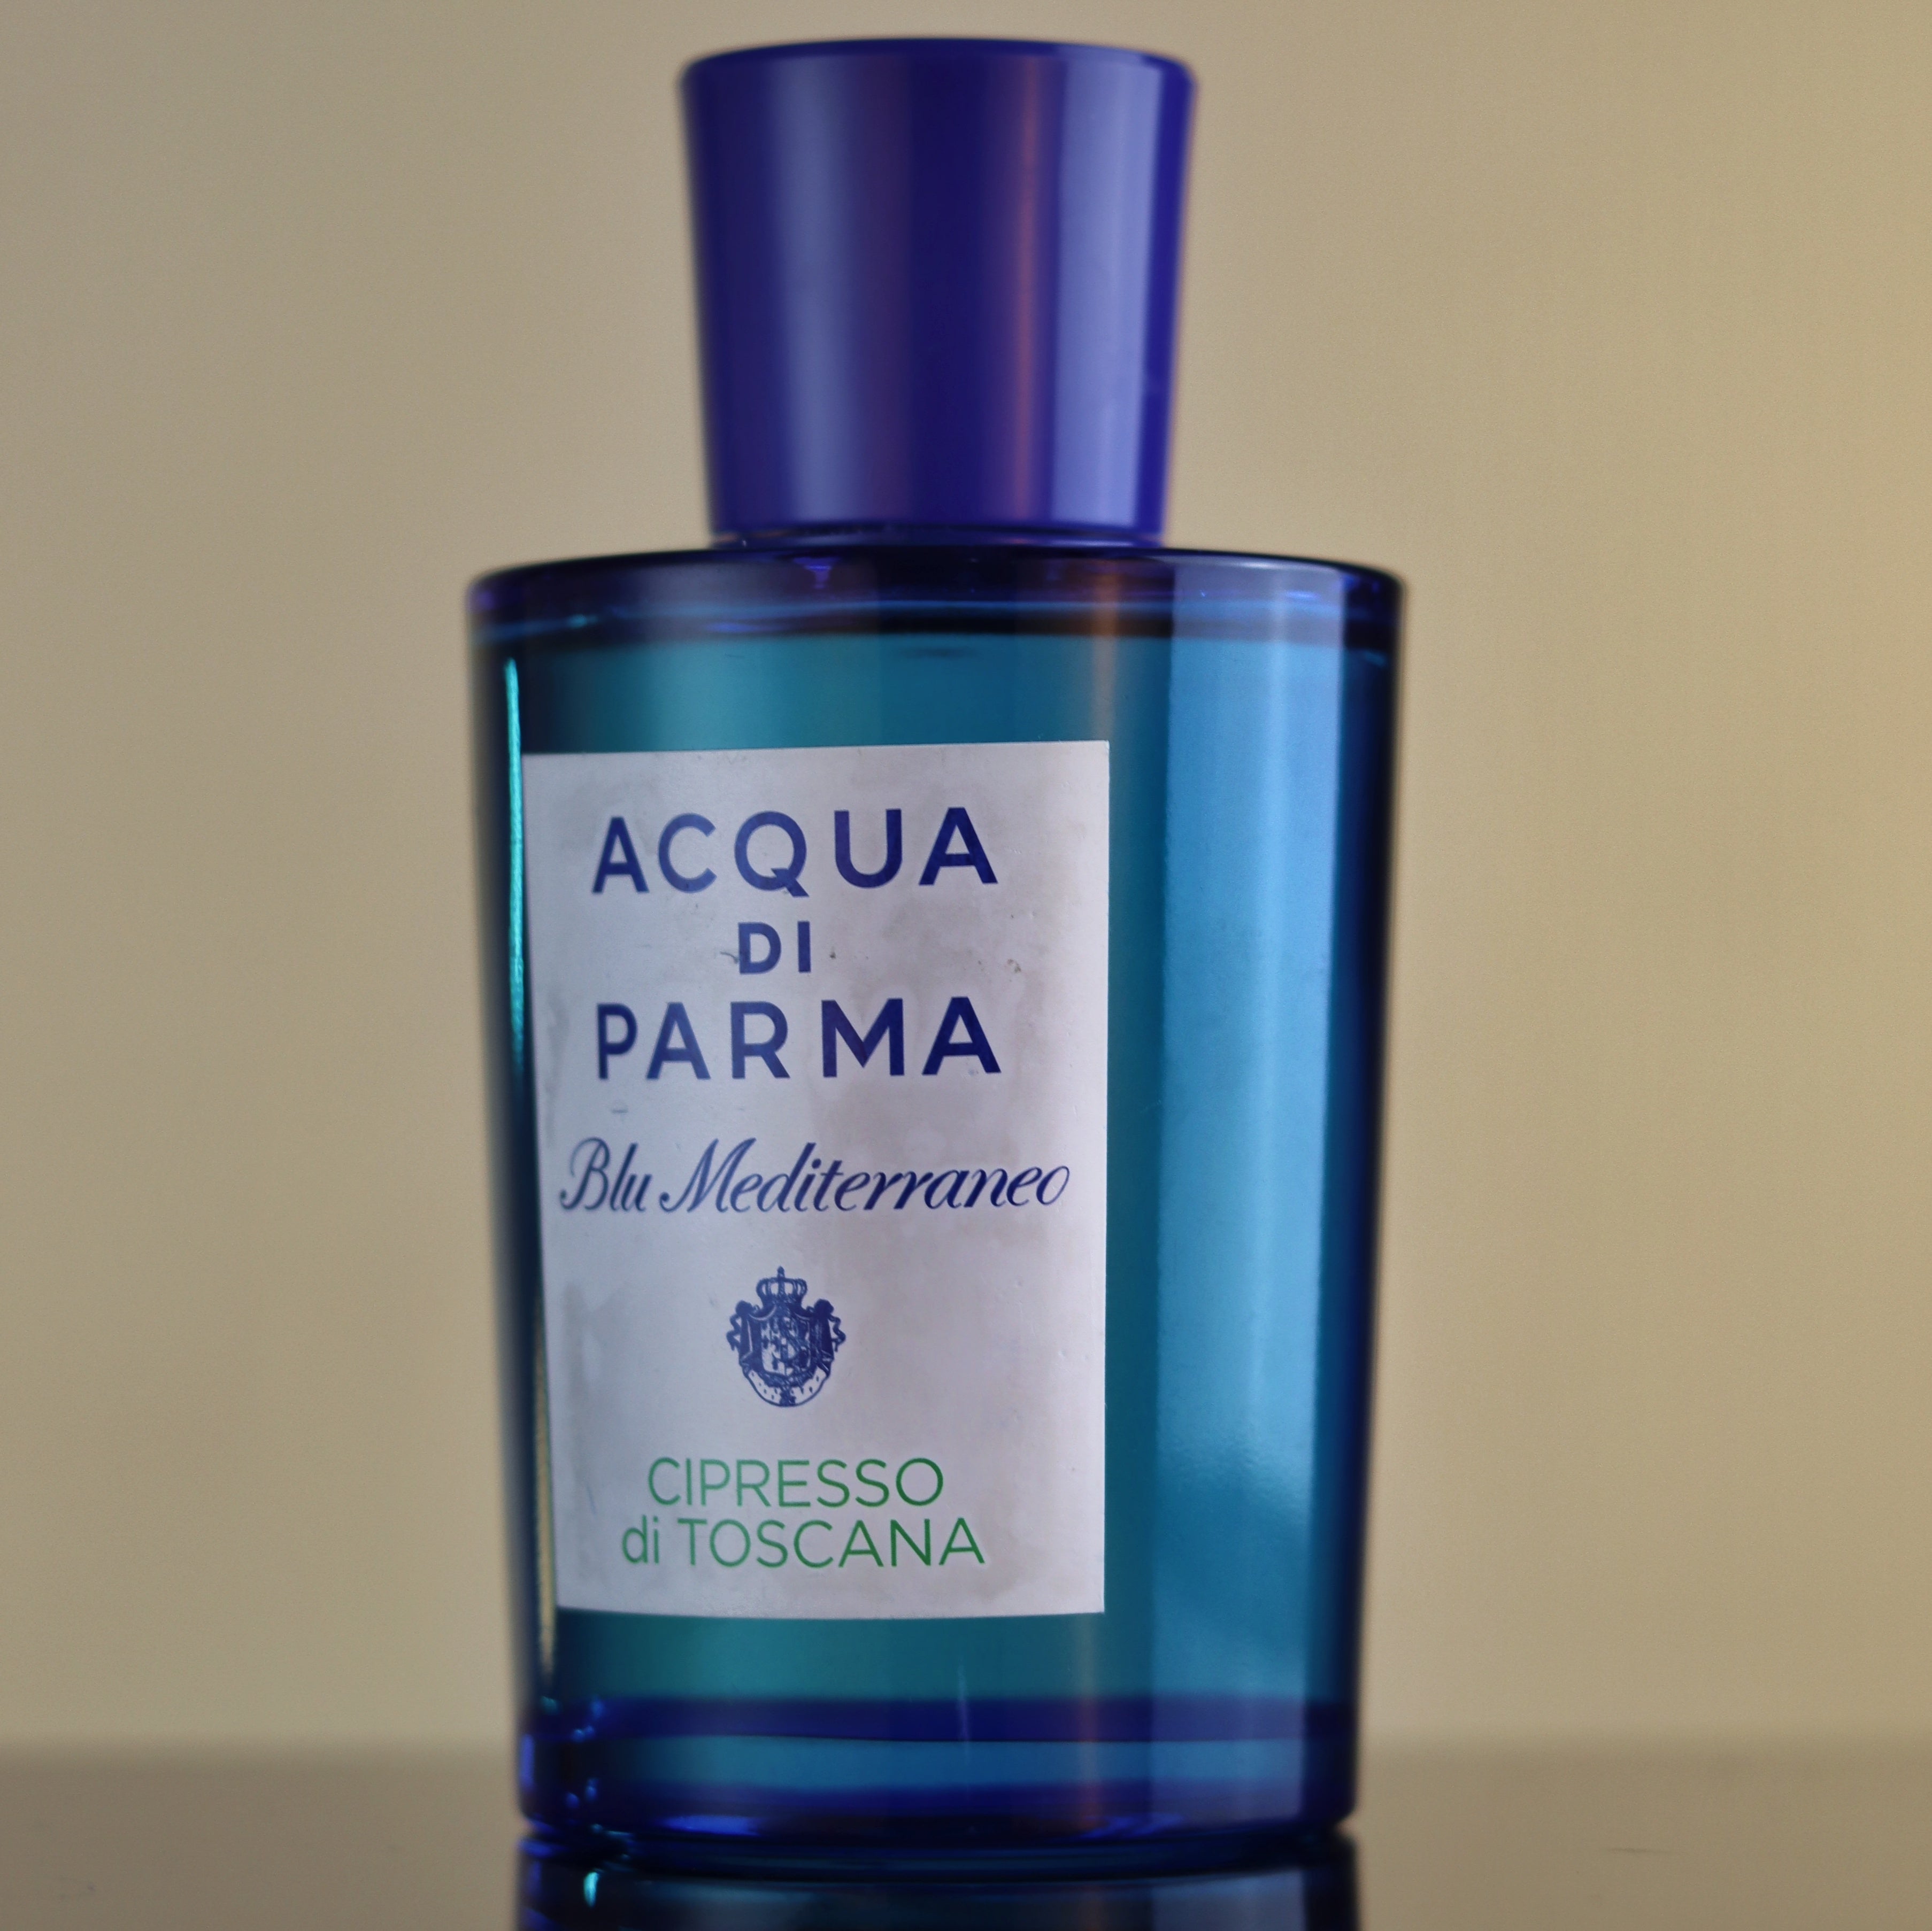 Colonia by Acqua Di Parma Fragrance Samples, DecantX